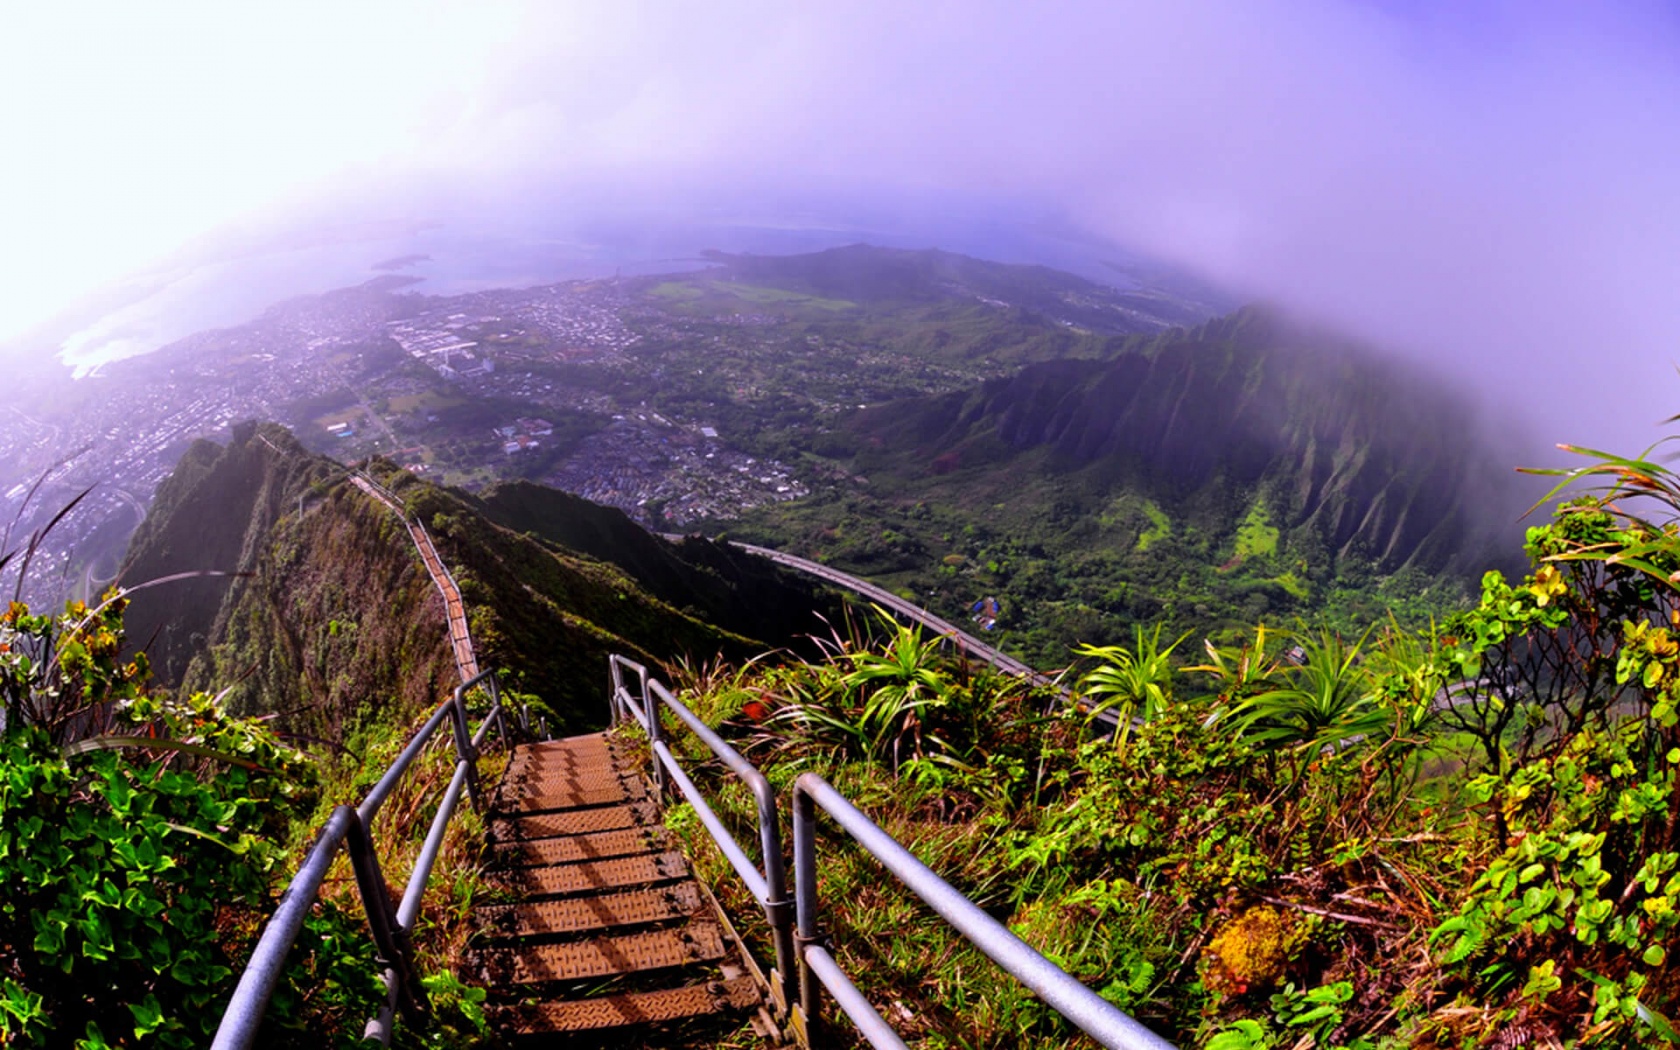 Descarga gratuita de fondo de pantalla para móvil de Paisaje, Montaña, Planta, Niebla, Escalera, Valle, Hawai, Fotografía.